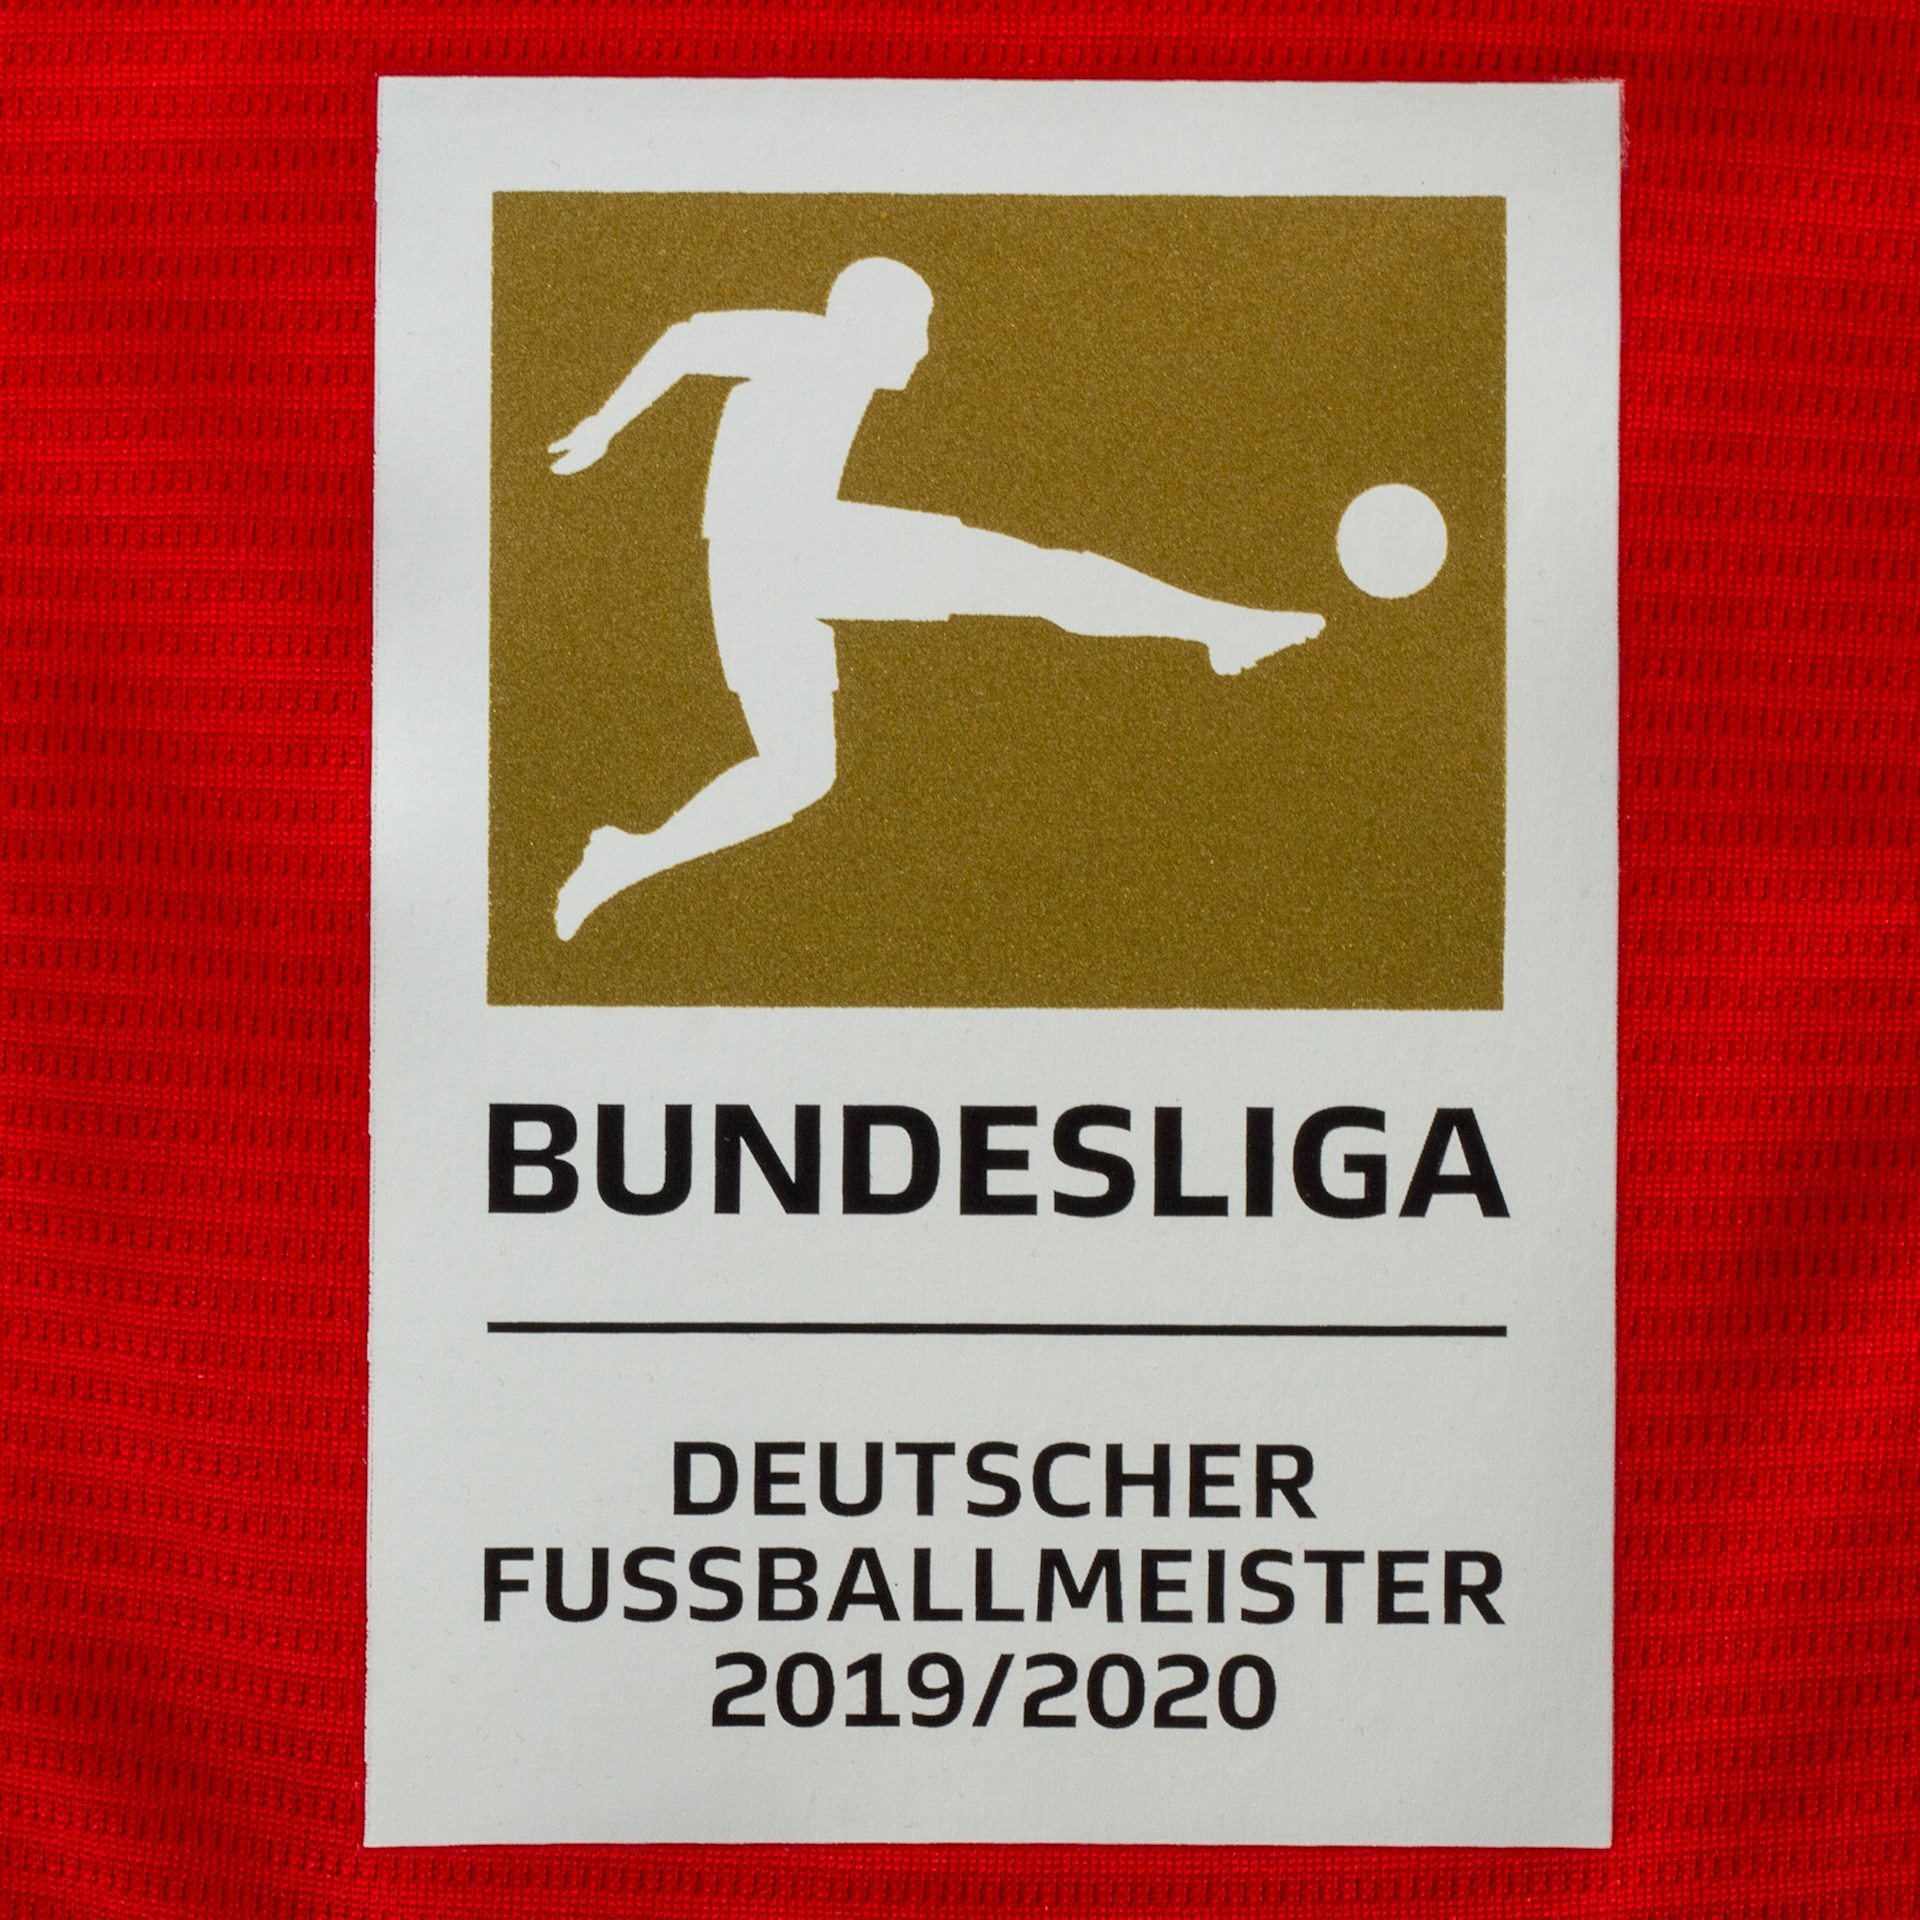 Bundesliga kampioensbadge